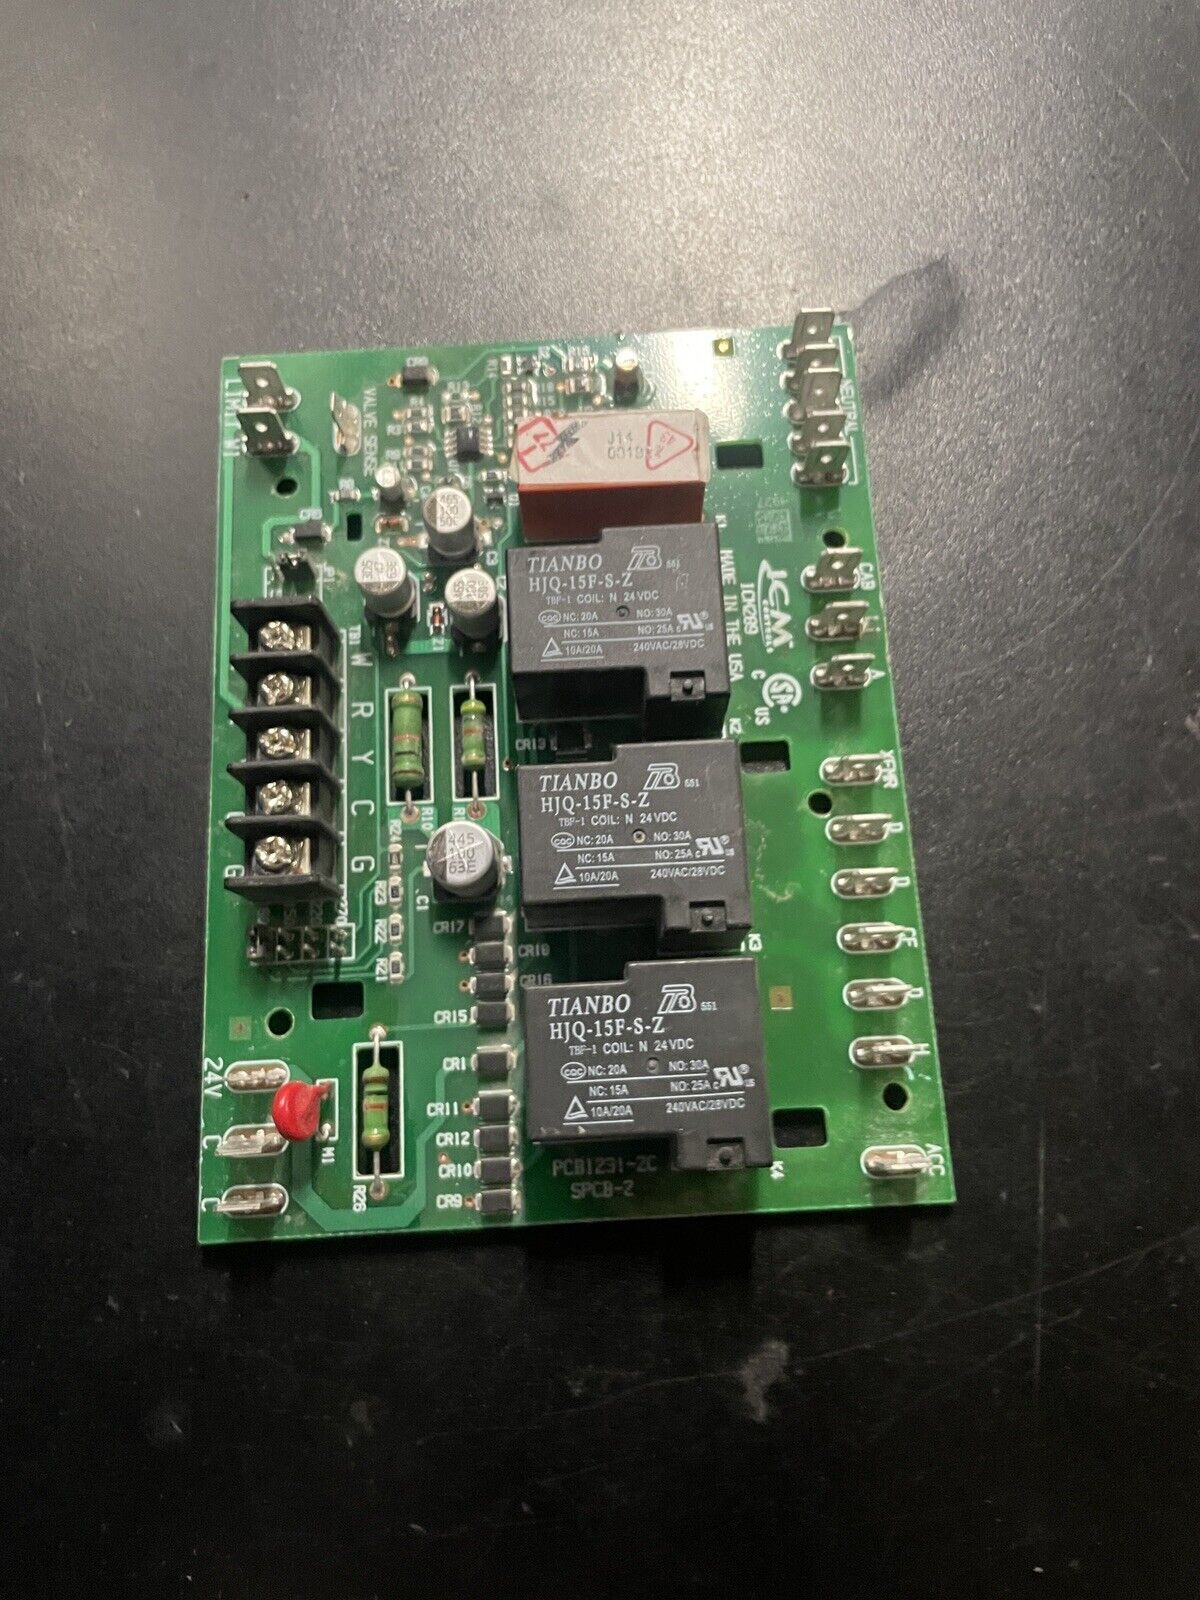 322 ICM hvac control board, ICM289, PCB1231-2C, SPCB-2 |WM1534